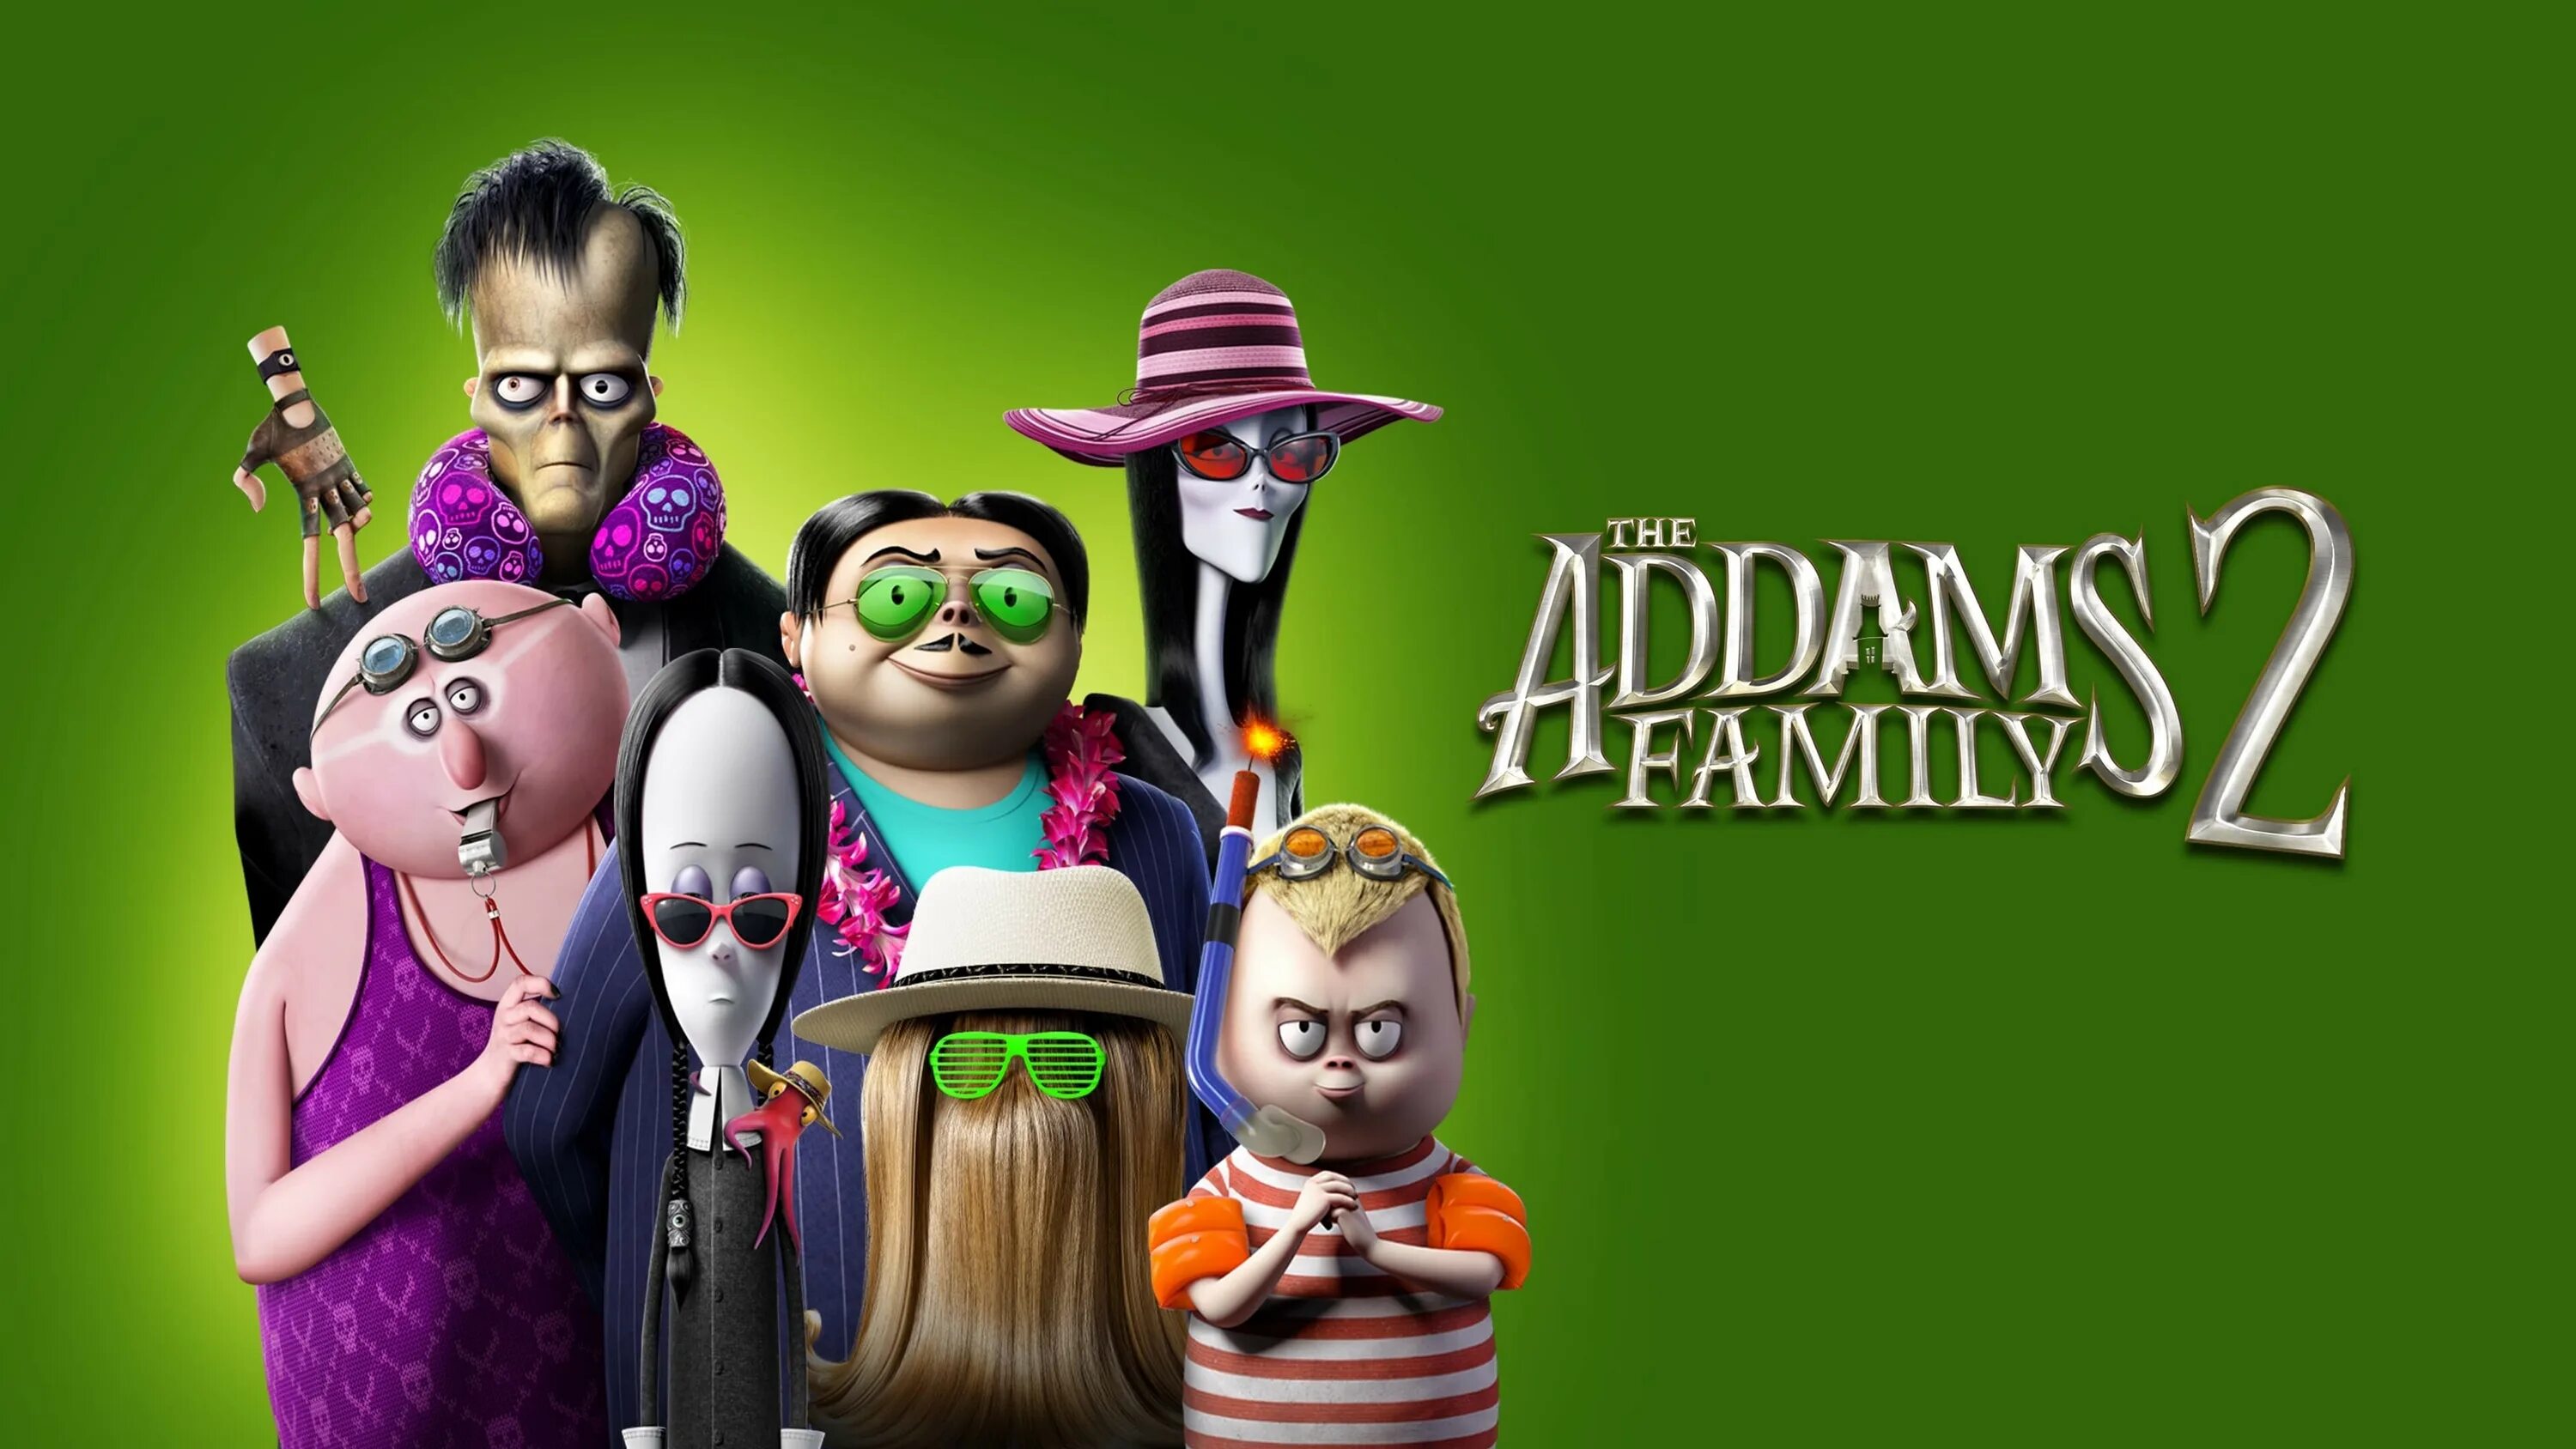 Включи 2 семейных. Семейка Аддамс 2021. Семейка Аддамс горящий тур (the Addams Family 2).